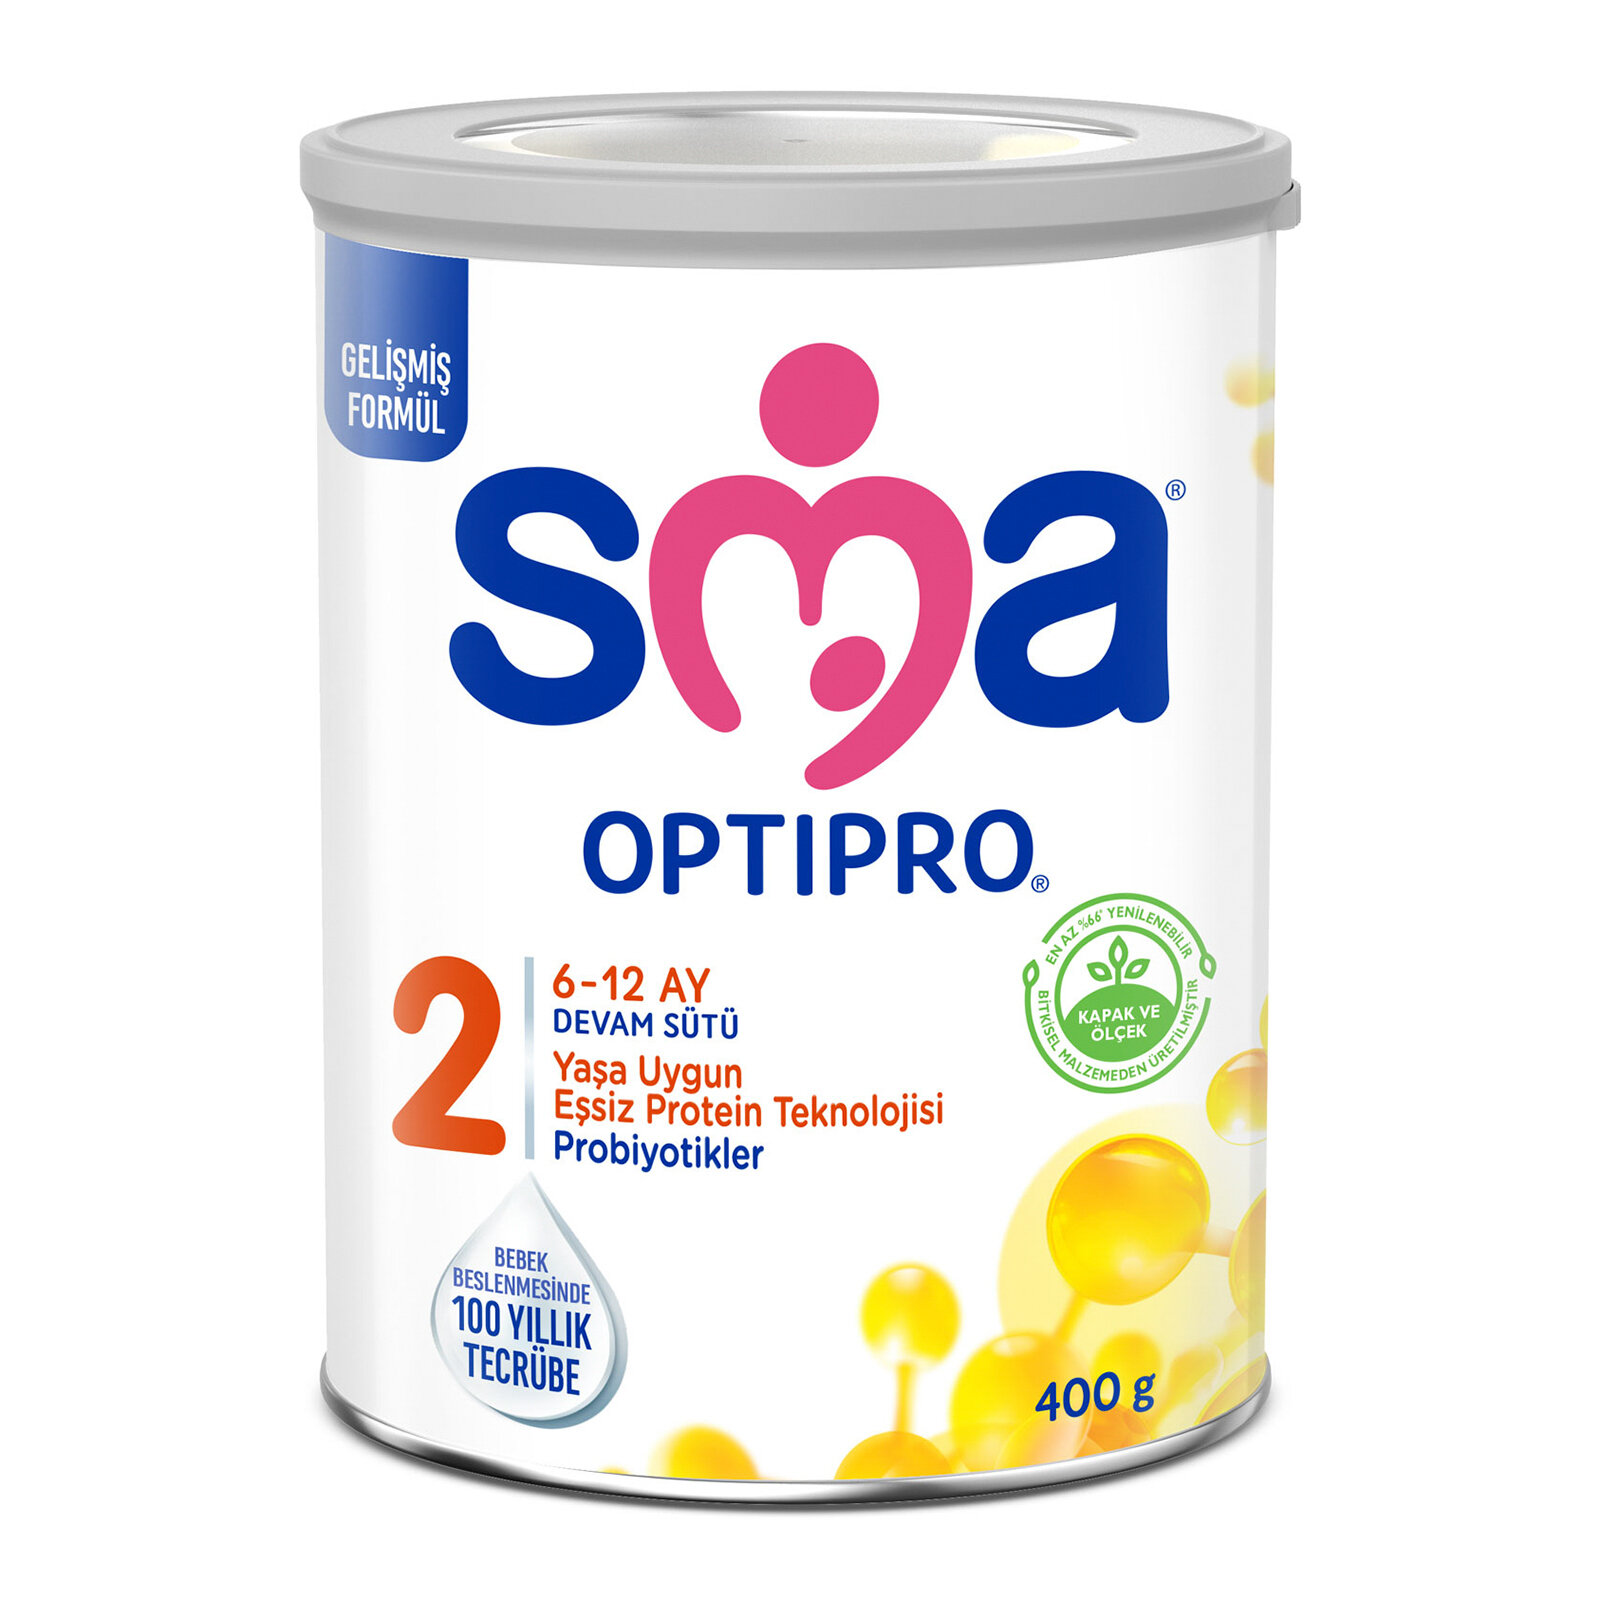 Optipro Probiyotik 2 Devam Sütü 400 gr 6-12 Ay